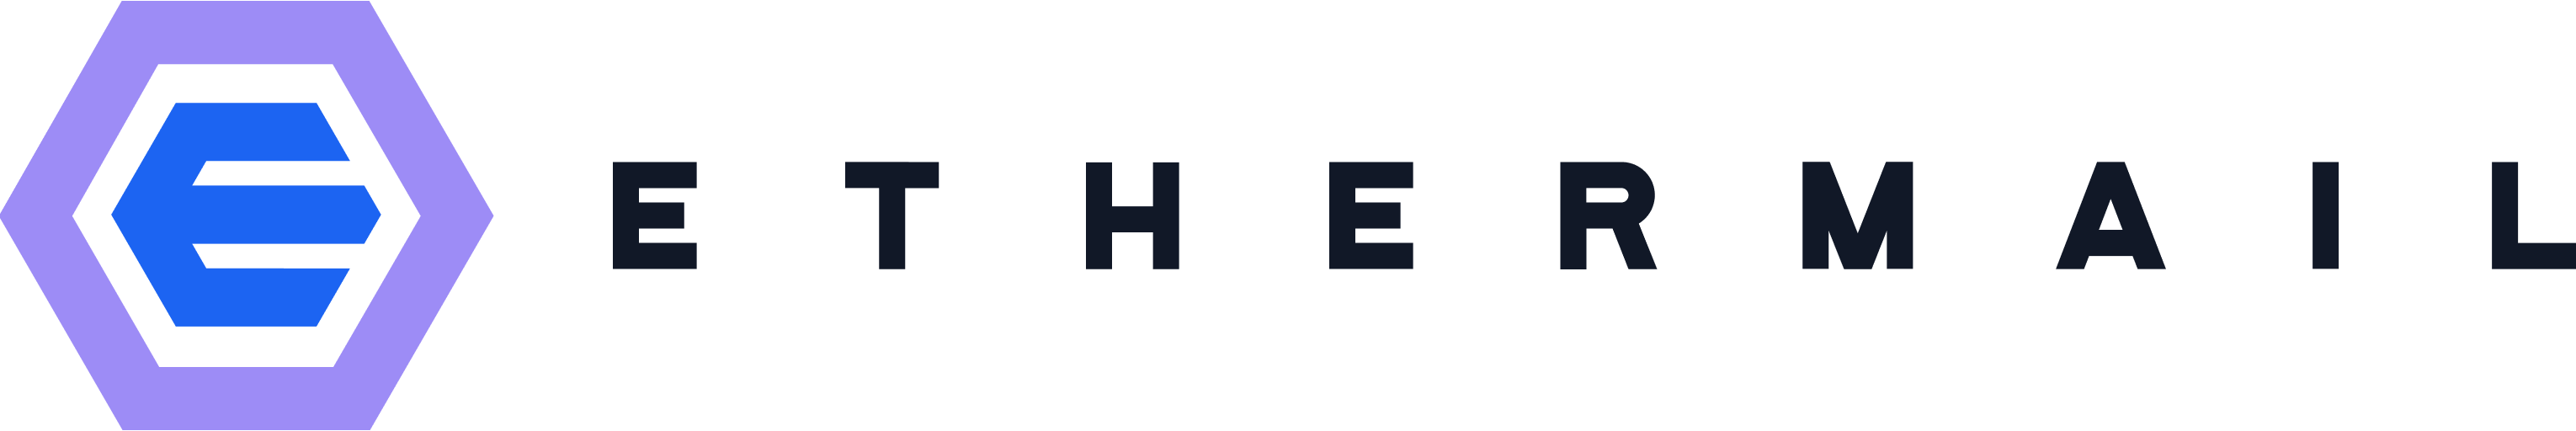 ethermail logo